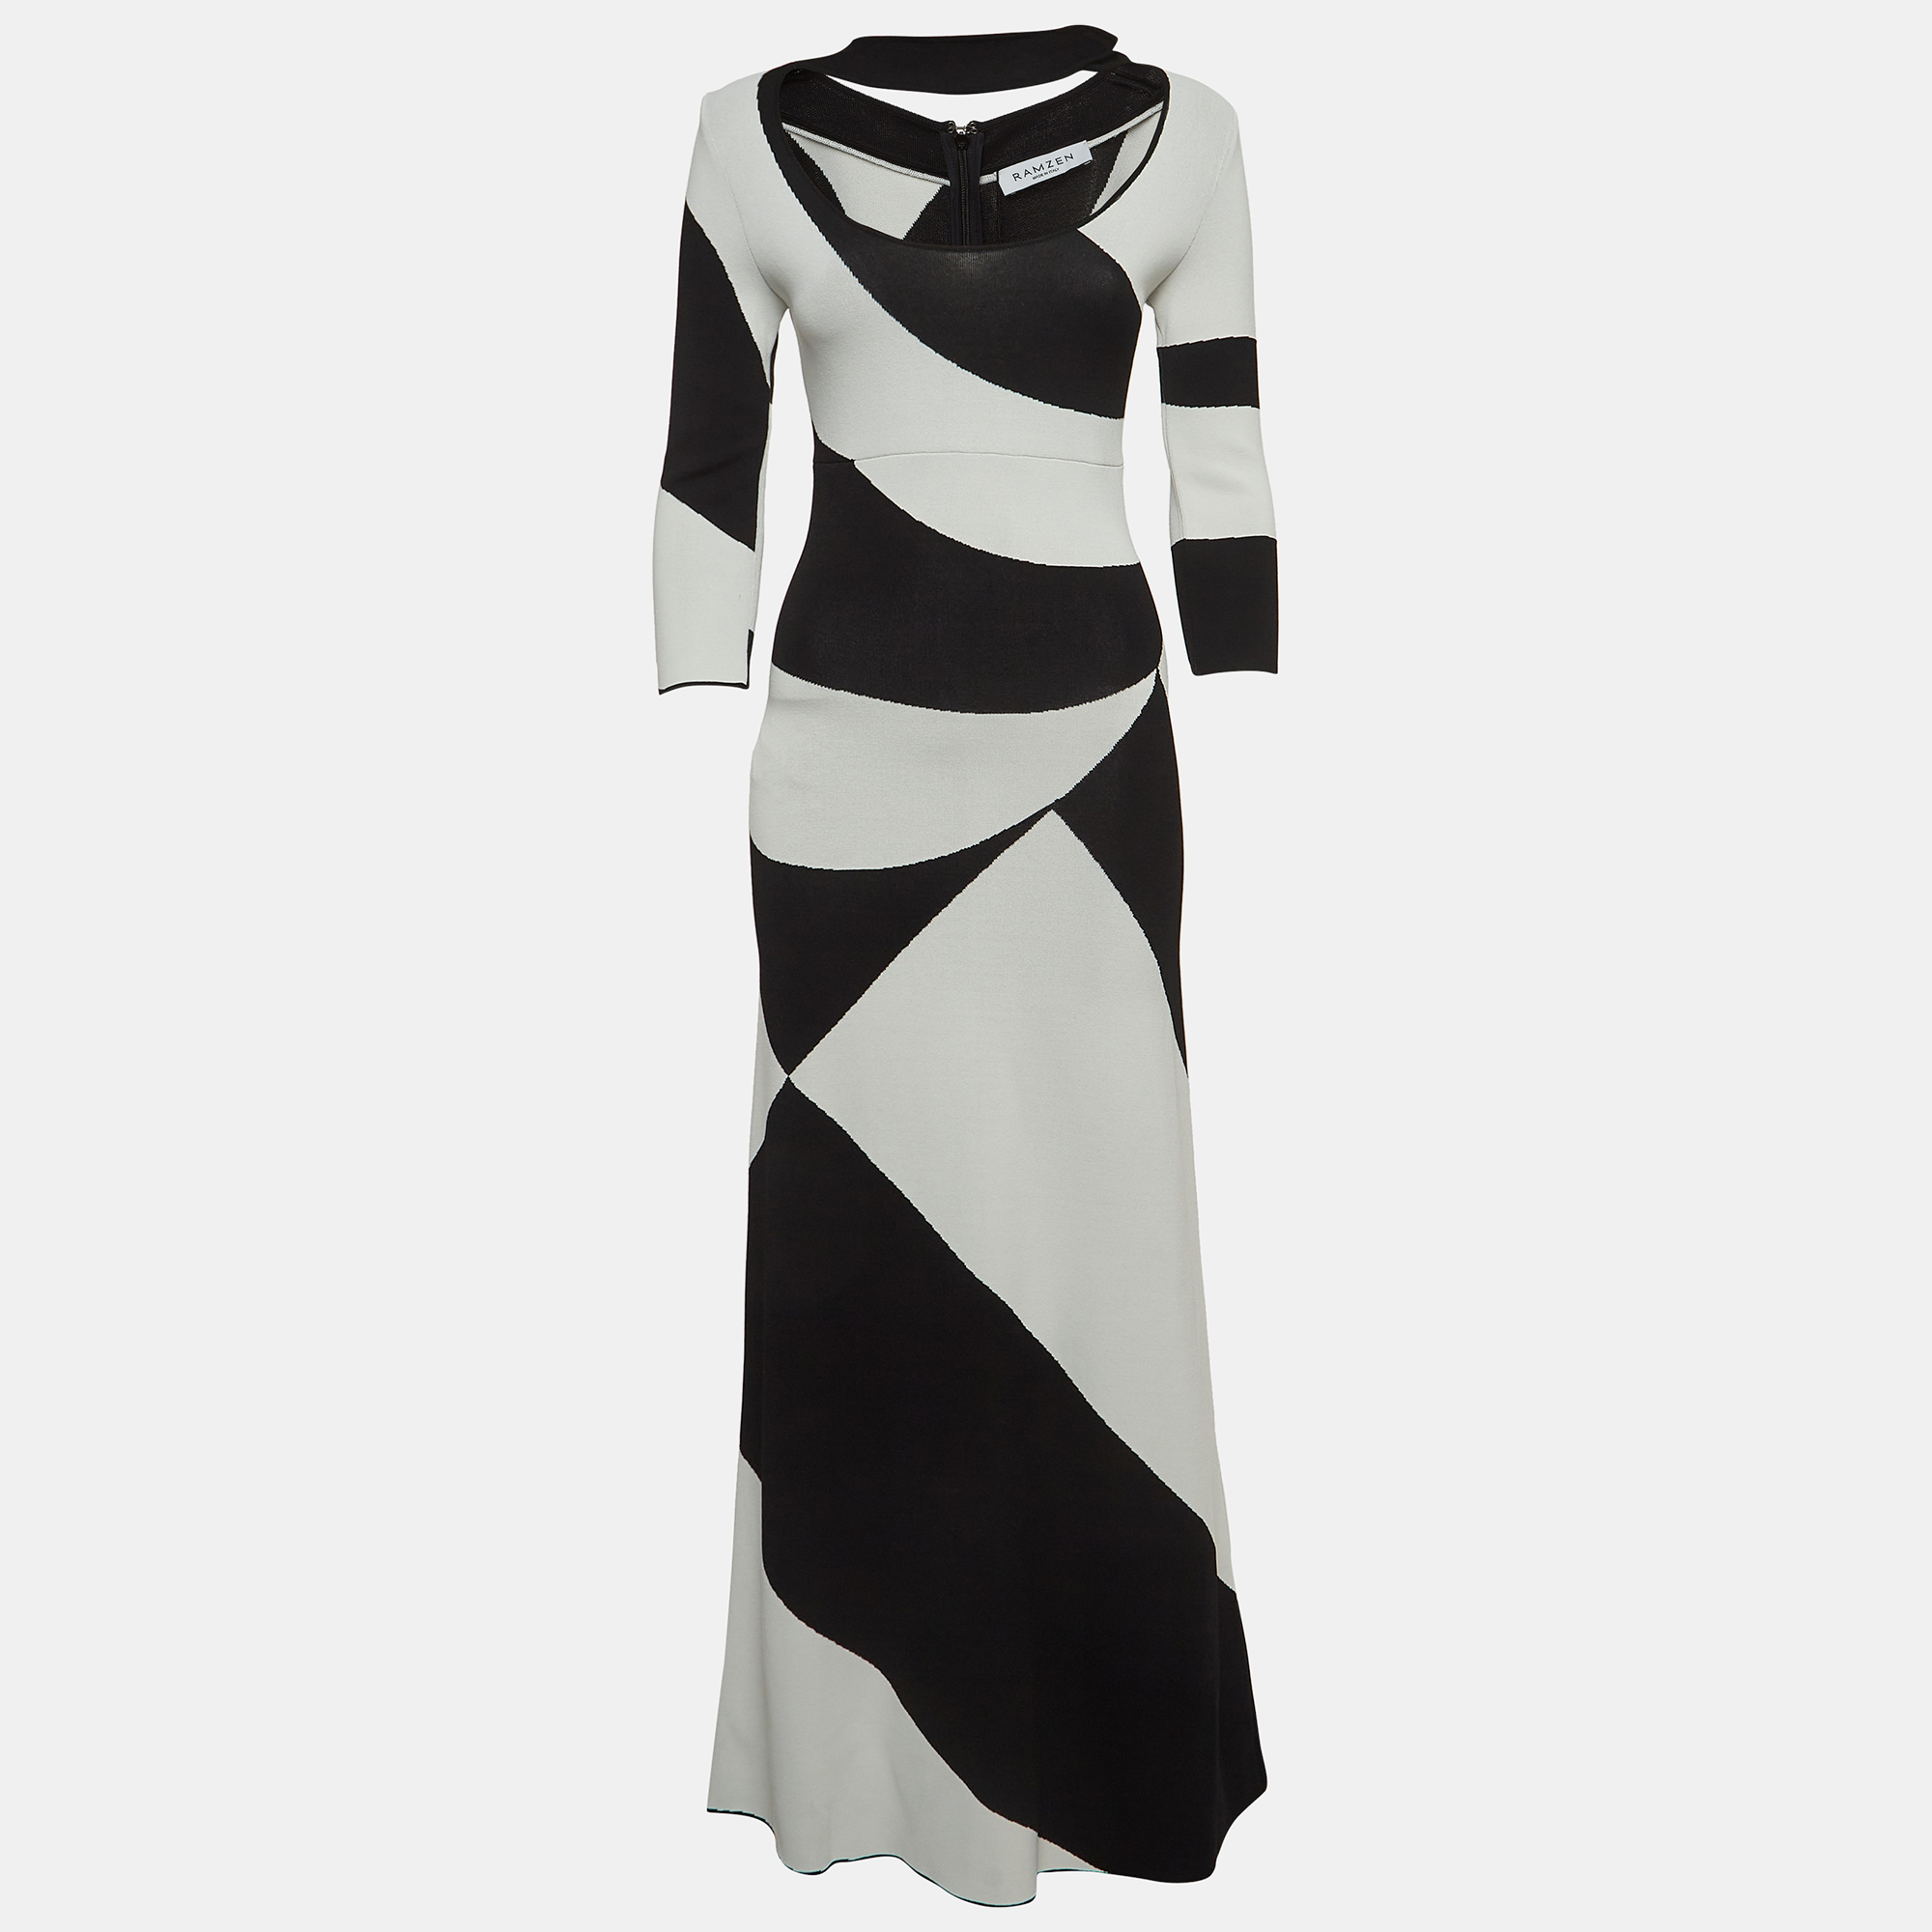 Ramzen black/white striped knit maxi dress s